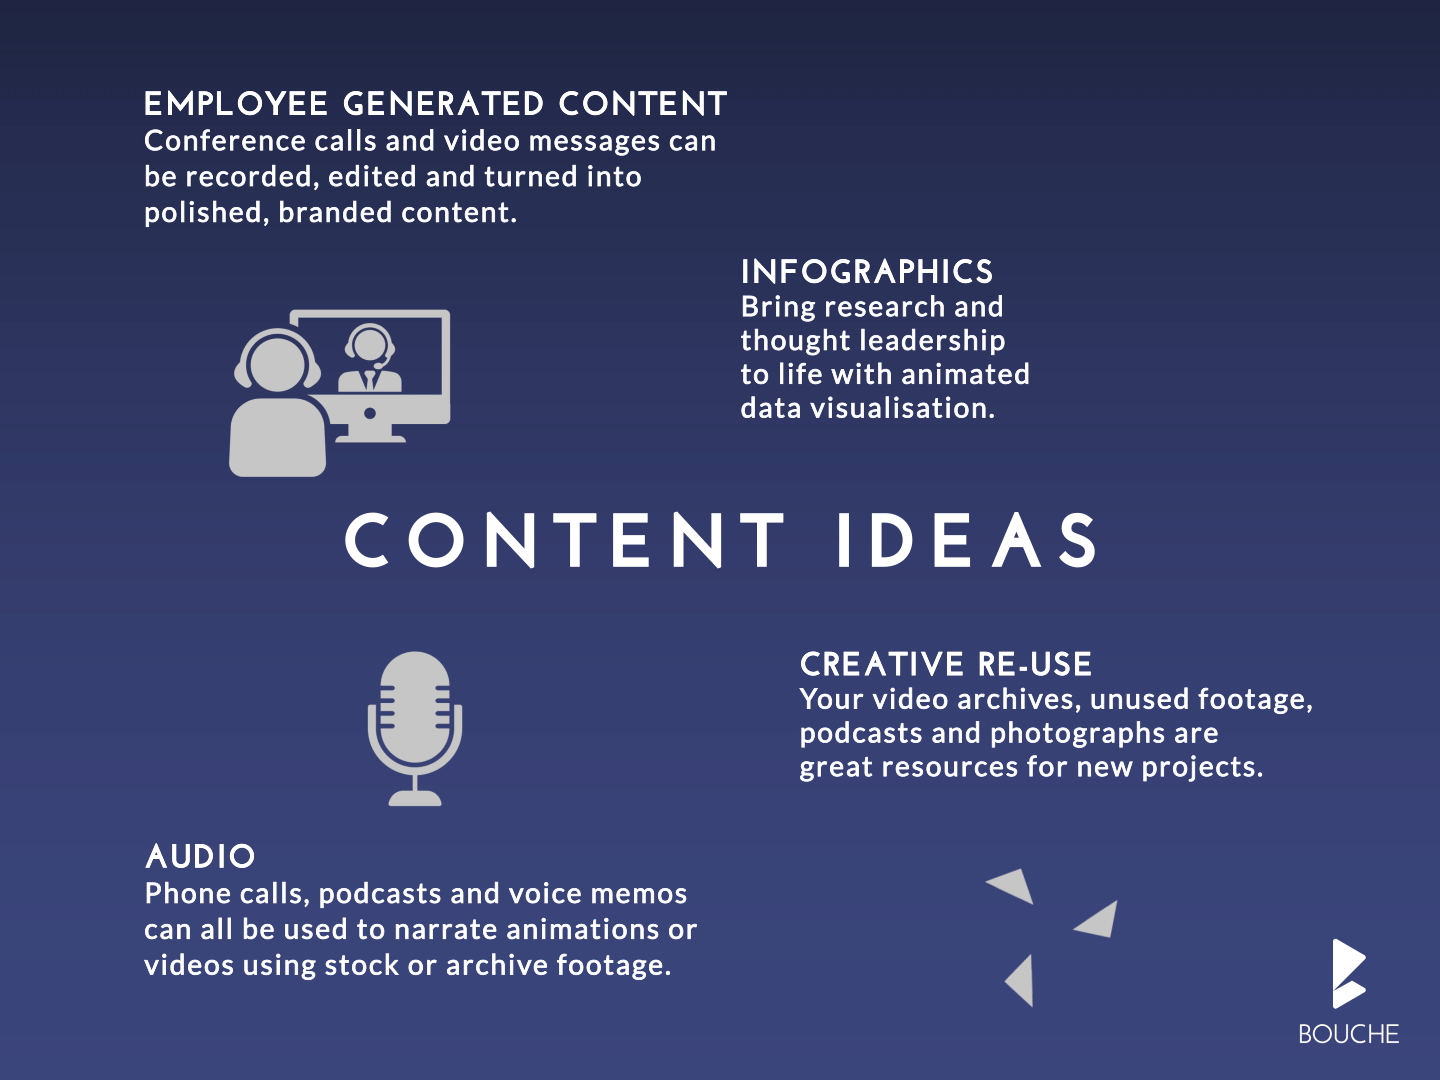 Content ideas